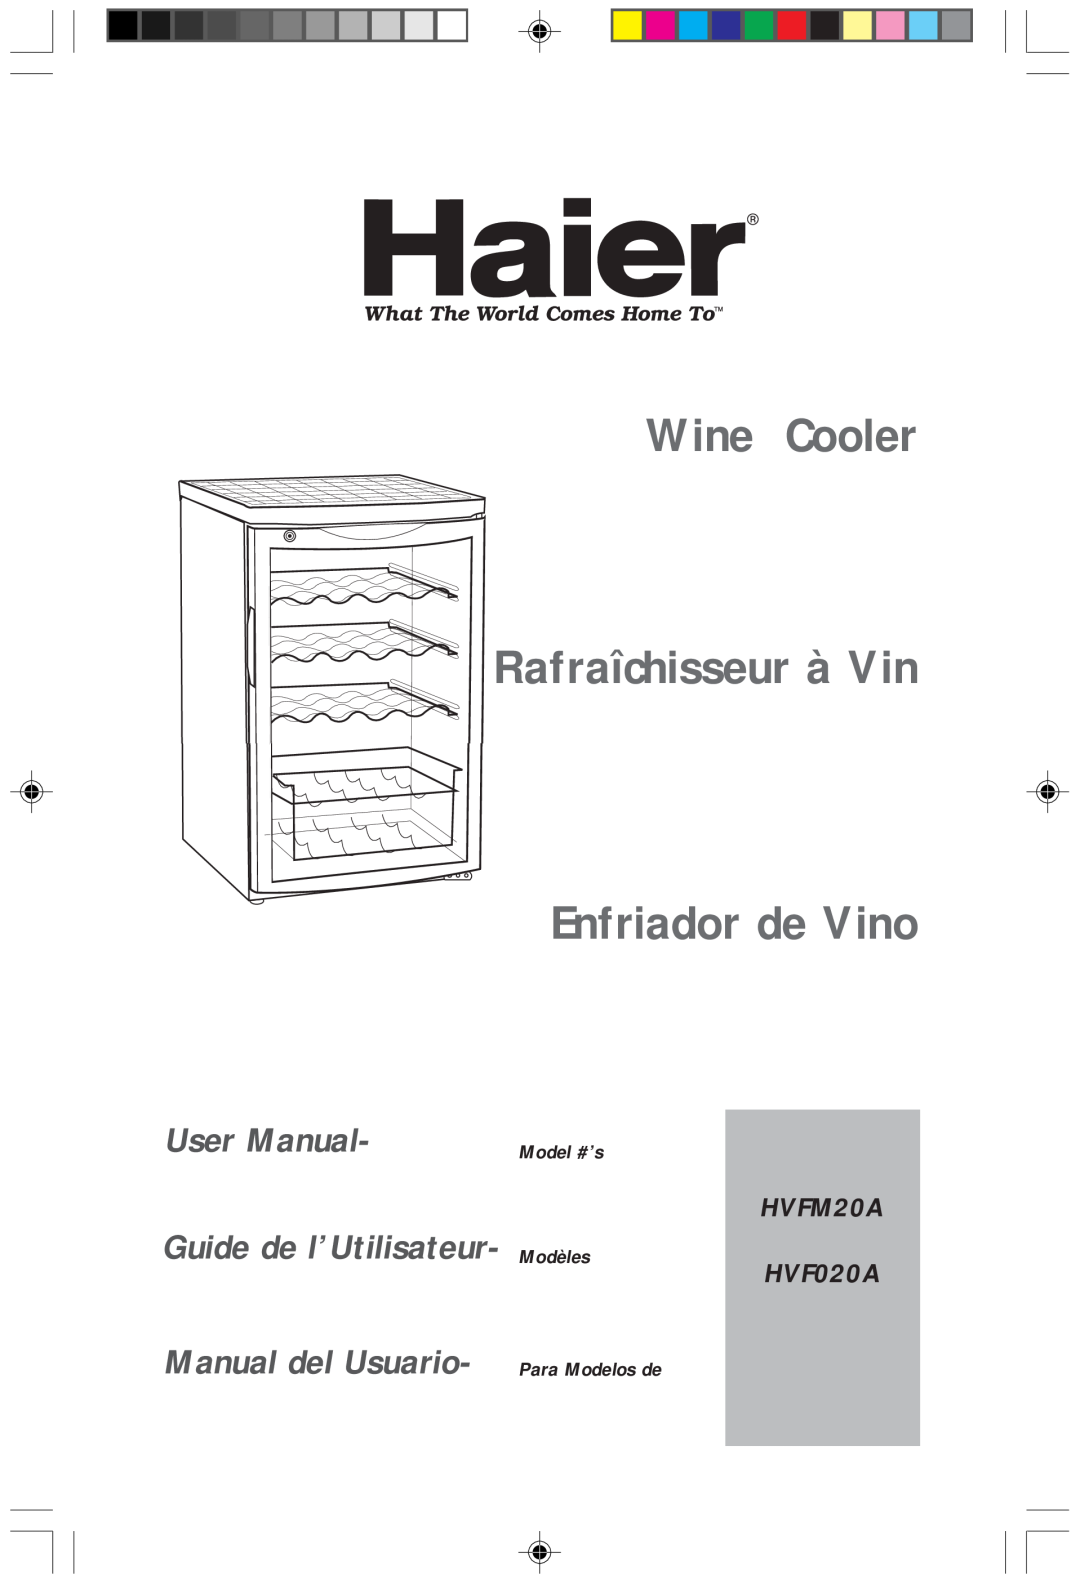 Haier HVFM20A user manual Model #’s Modèles, Wine Cooler Rafraîchisseur à Vin Enfriador de Vino, Guide de l’Utilisateur 